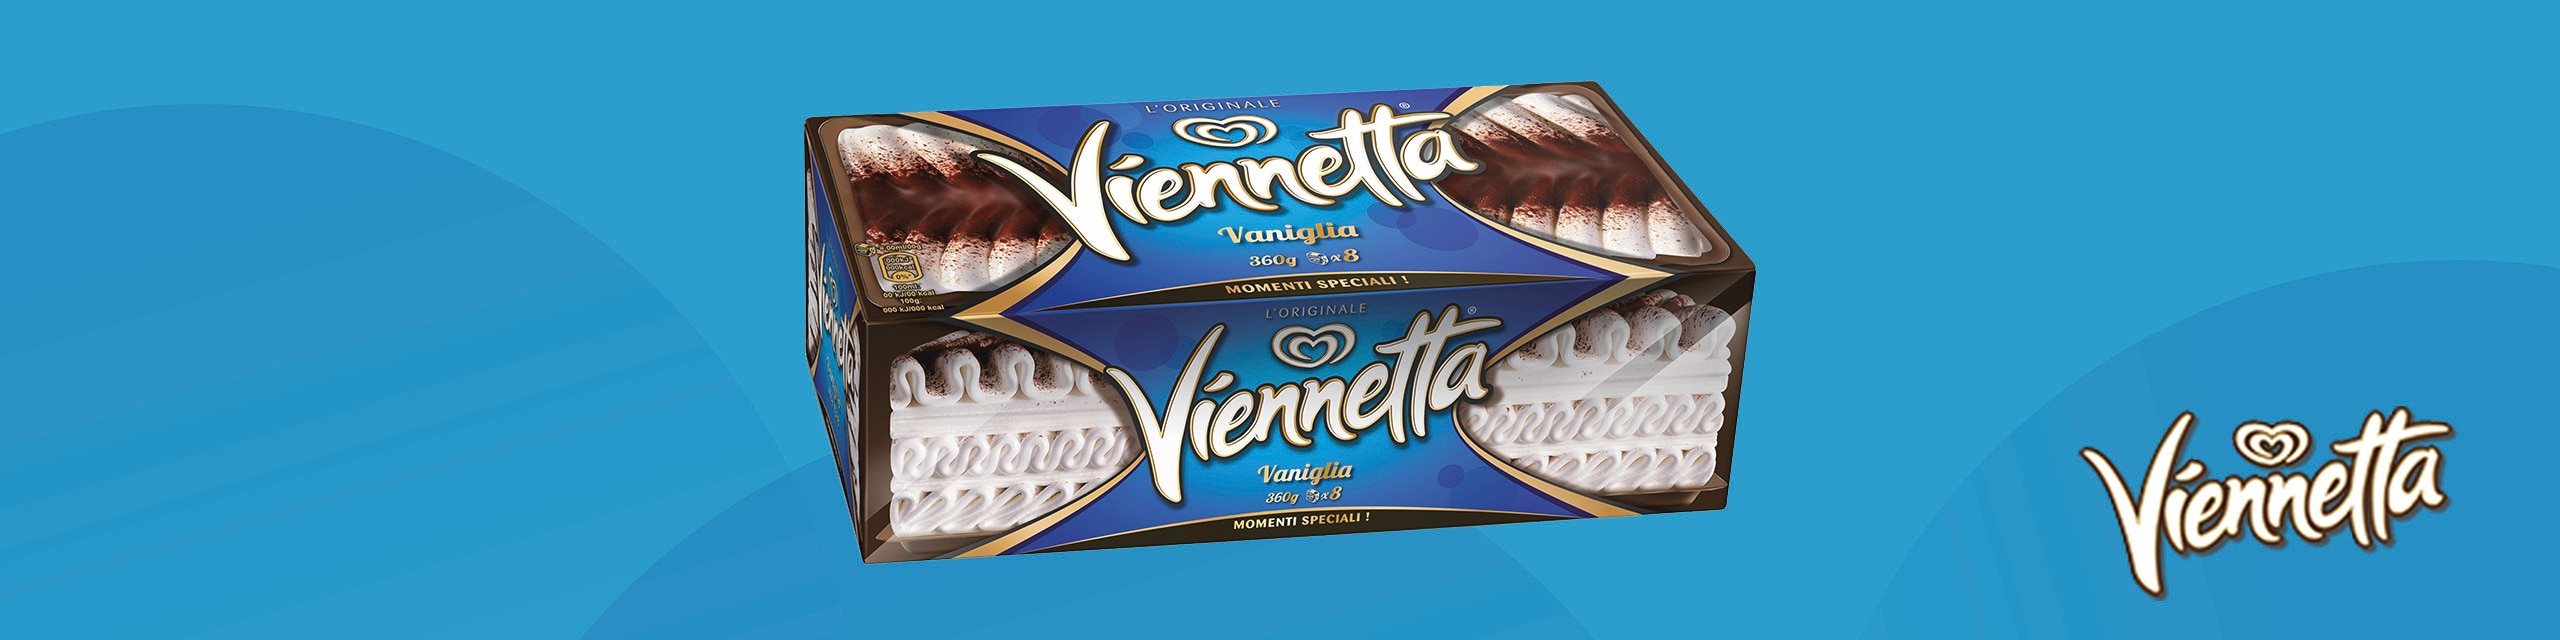 Viennetta Icecream